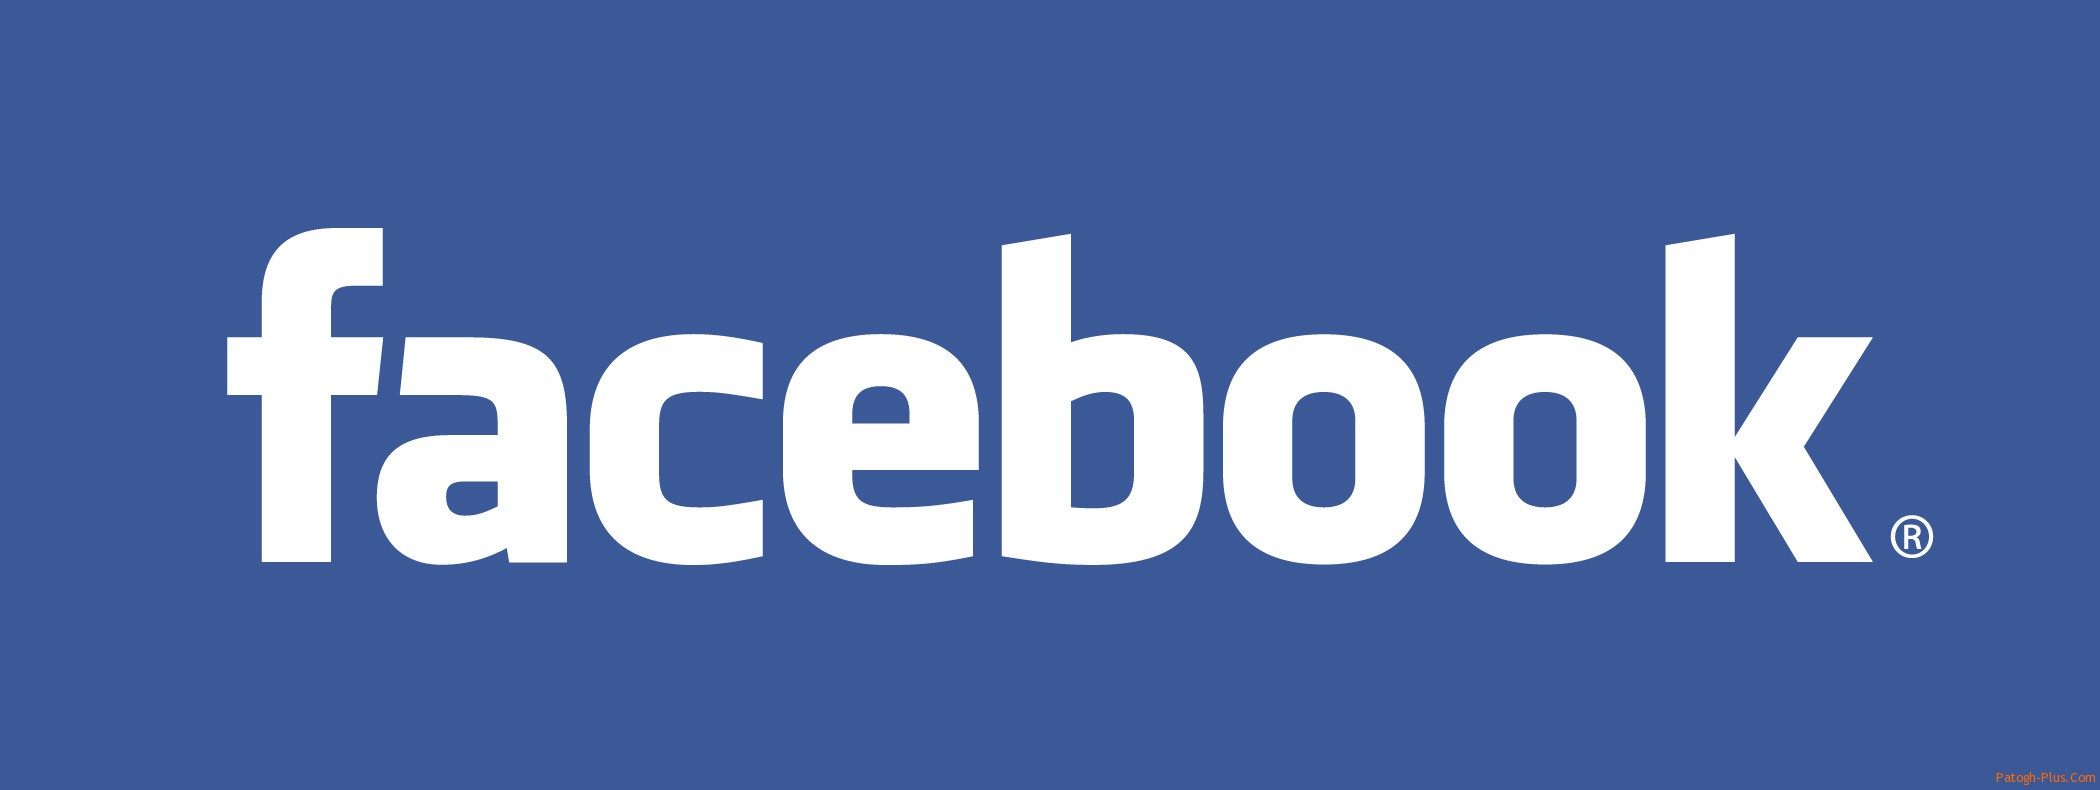 افزایش 3 برابری فیس بوک در سه ماه نخست امسال